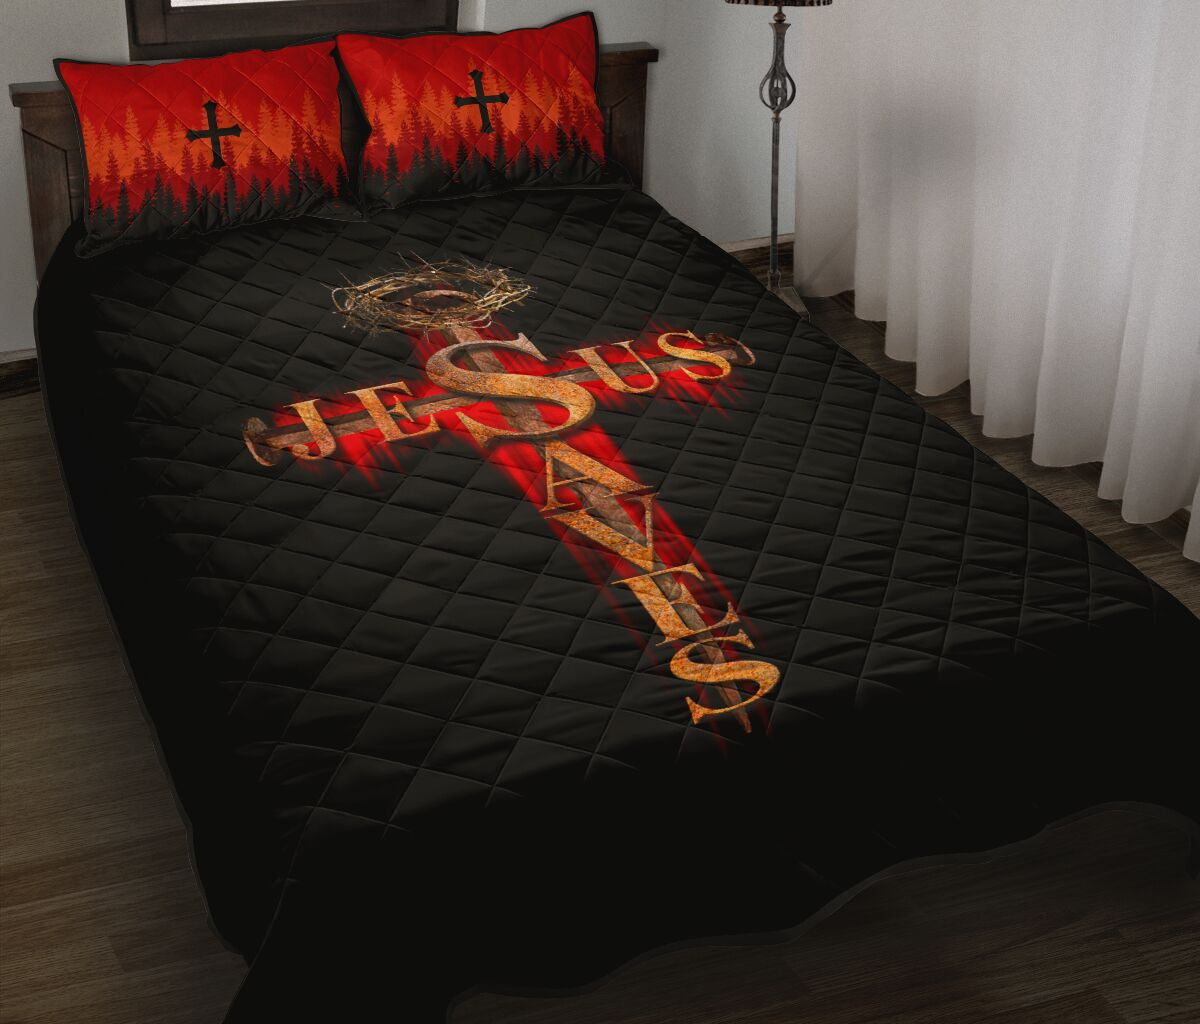 Jesus Saves Jesus Quilt Bedding Set - Christian Bedding Sets